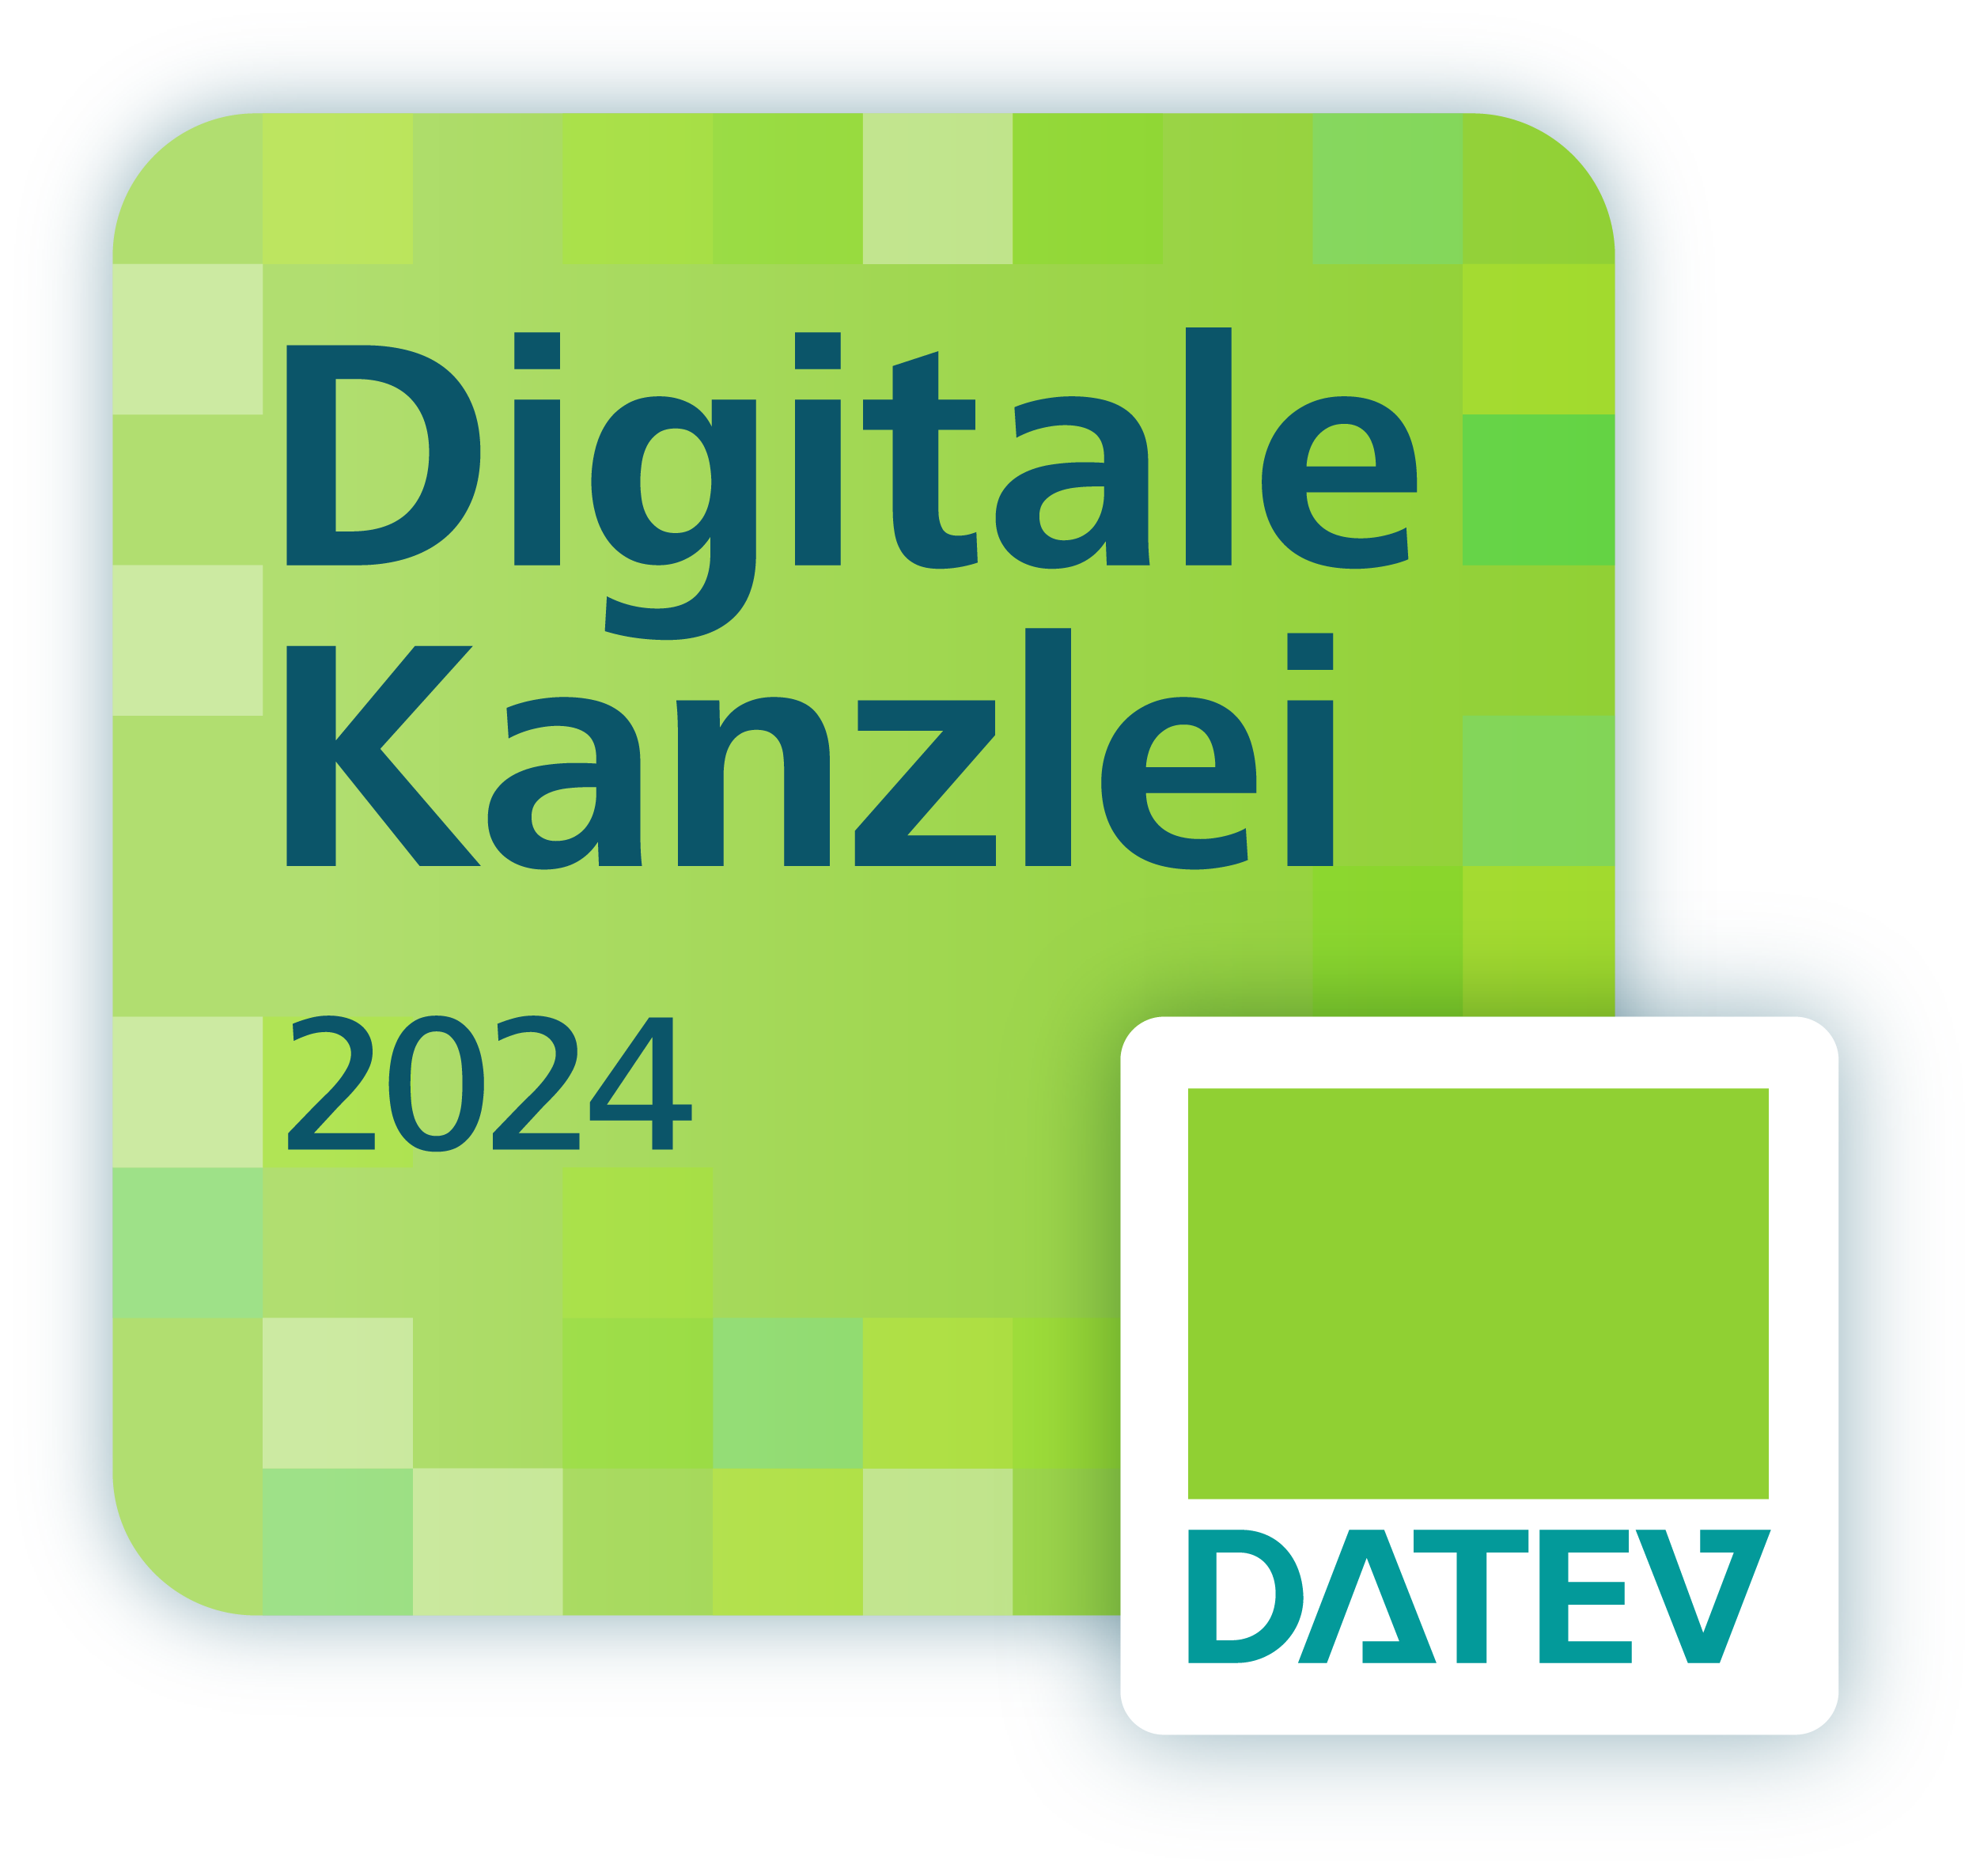 Digitale_Kanzlei_2023